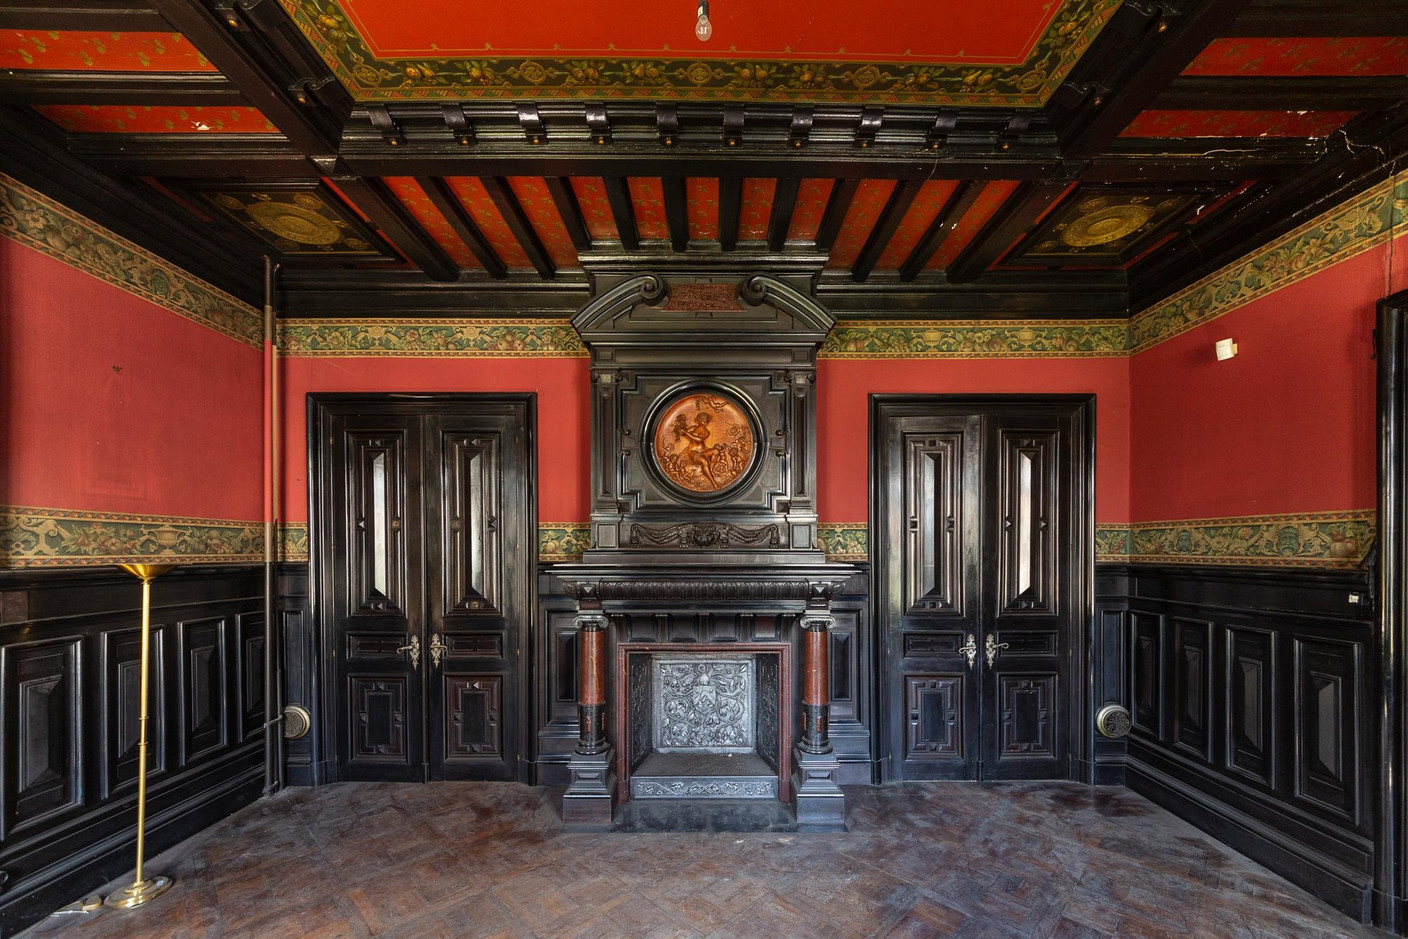 Un des salons, au style néo-Renaissance, avec sa majestueuse cheminée. (Photo: Jan Hanrion/Patricia Pitsch – archives Maison Moderne)